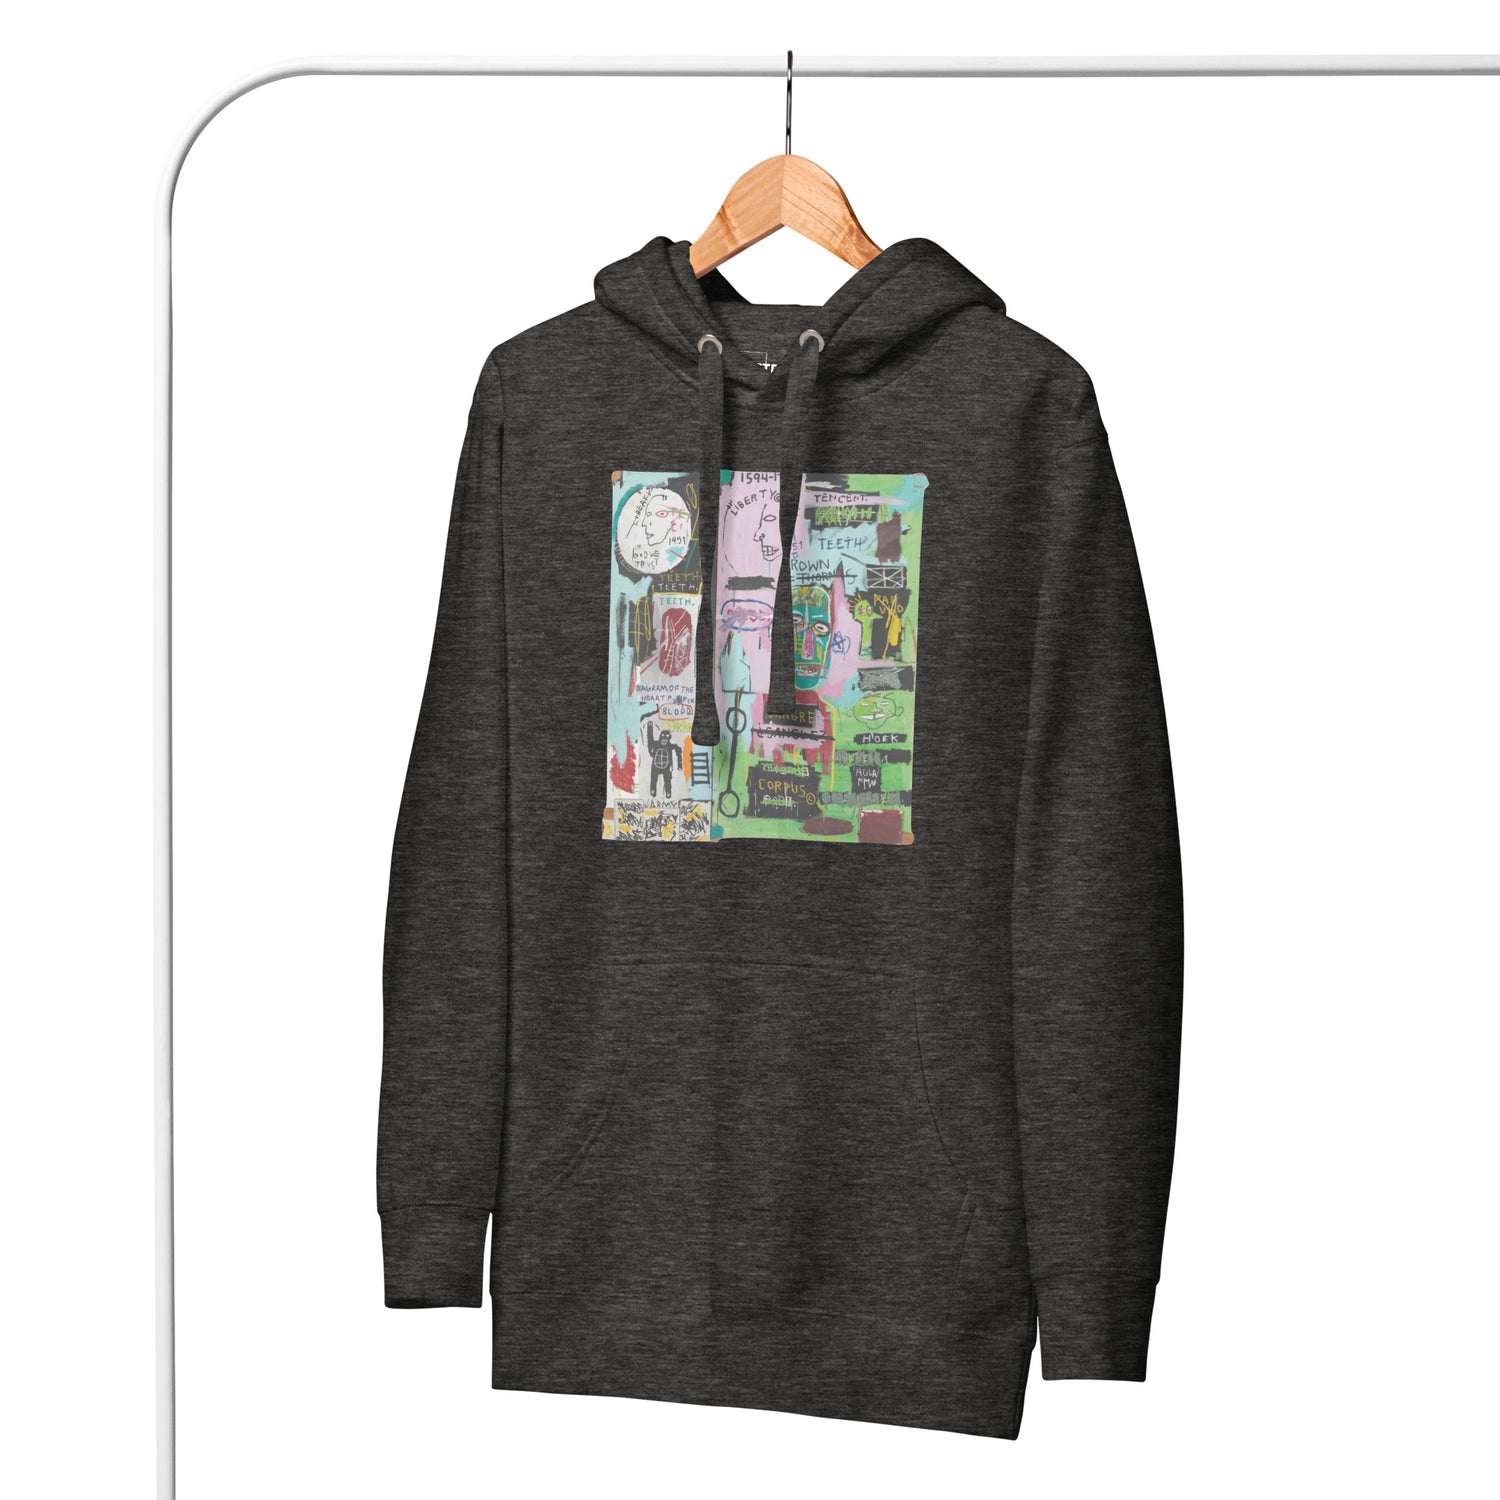 Jean-Michel Basquiat "In Italian" Artwork Printed Premium Streetwear Sweatshirt Hoodie Charcoal Grey